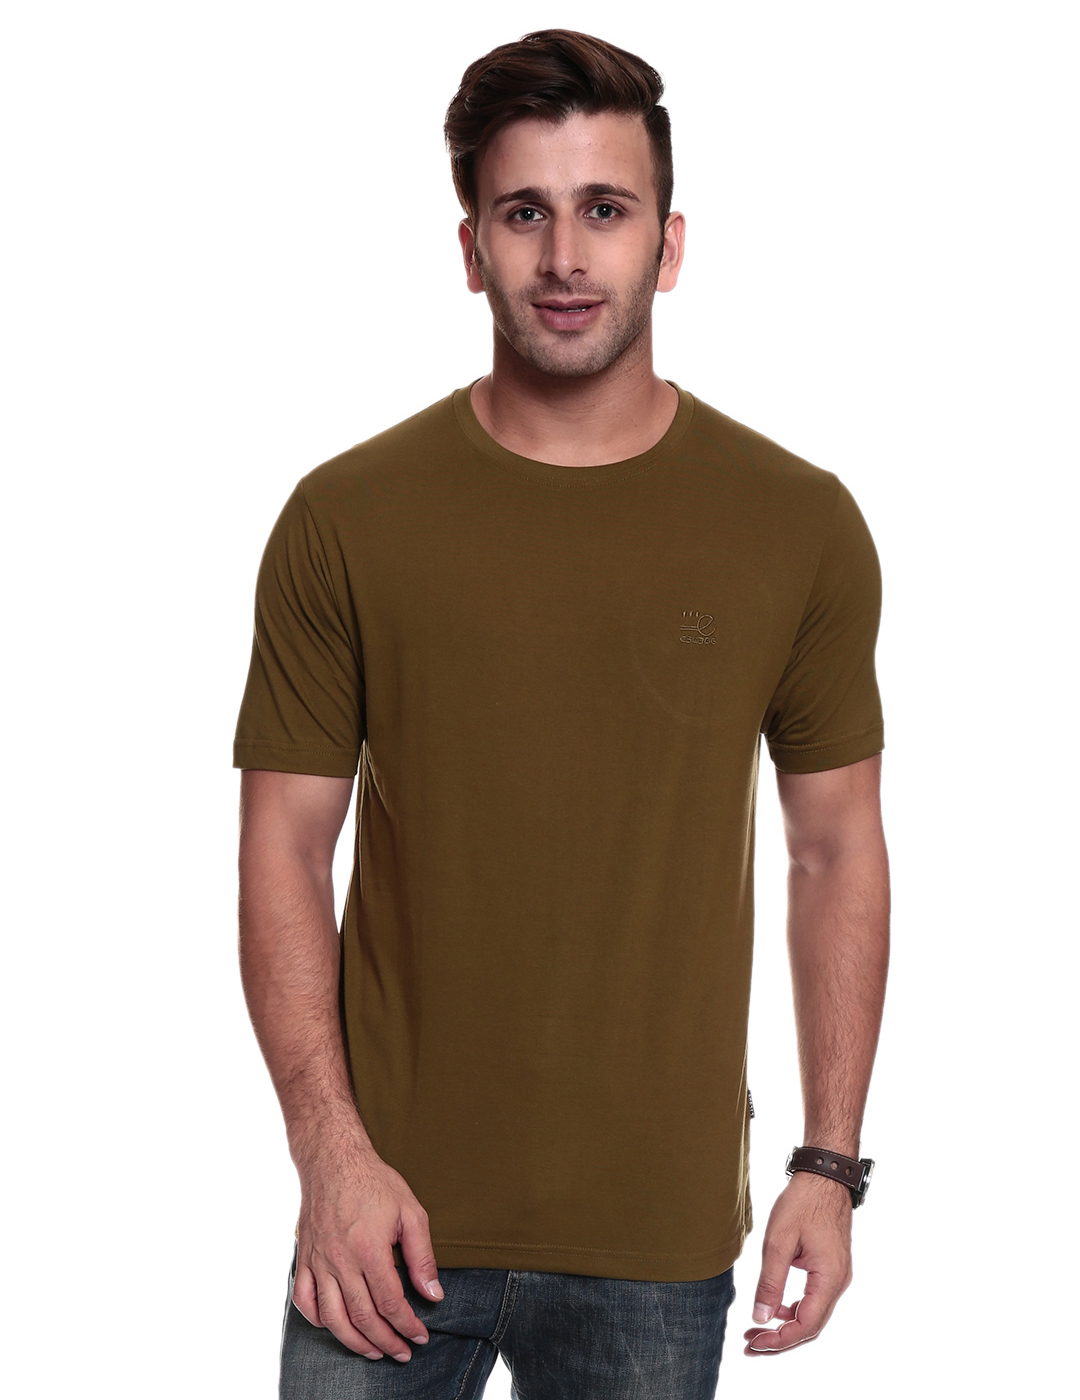 Online TSG ESCAPE Men's Plain Round Neck T-shirt_Olive Green Colour ...